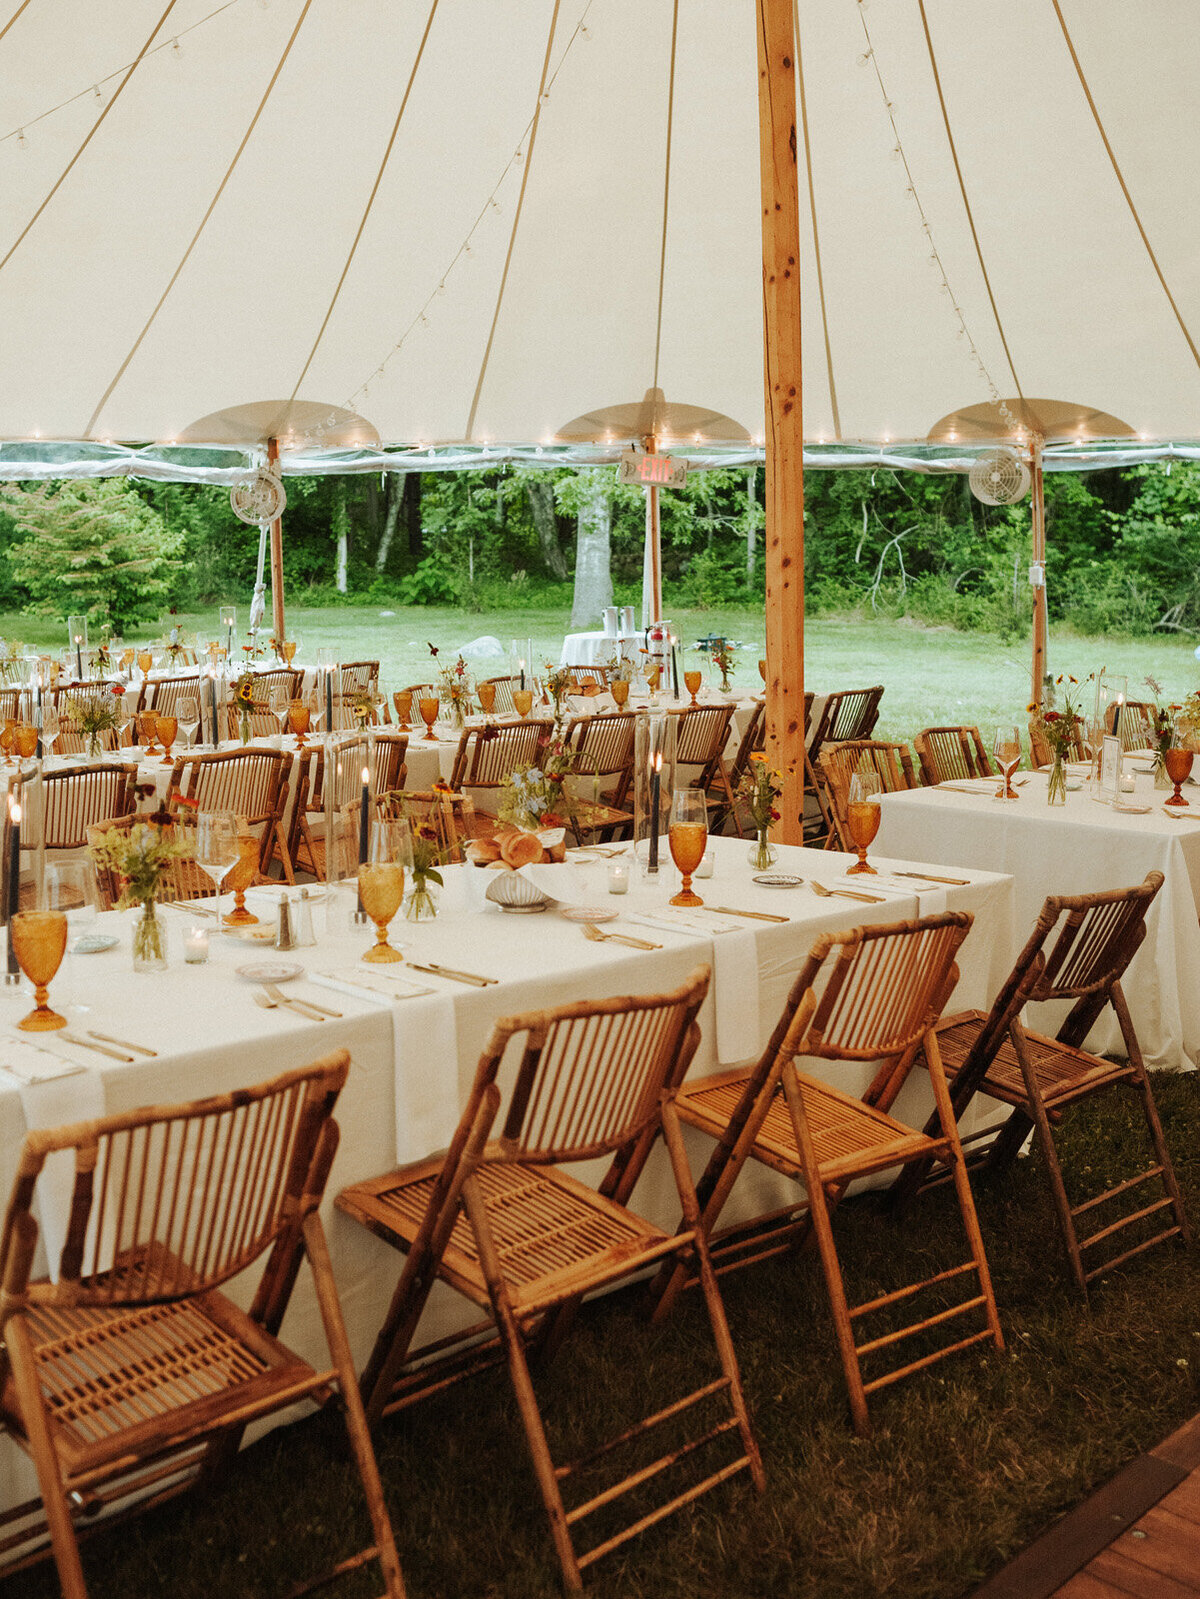 Kate-Murtaugh-Events-bamboo-chairs-backyard-wedding